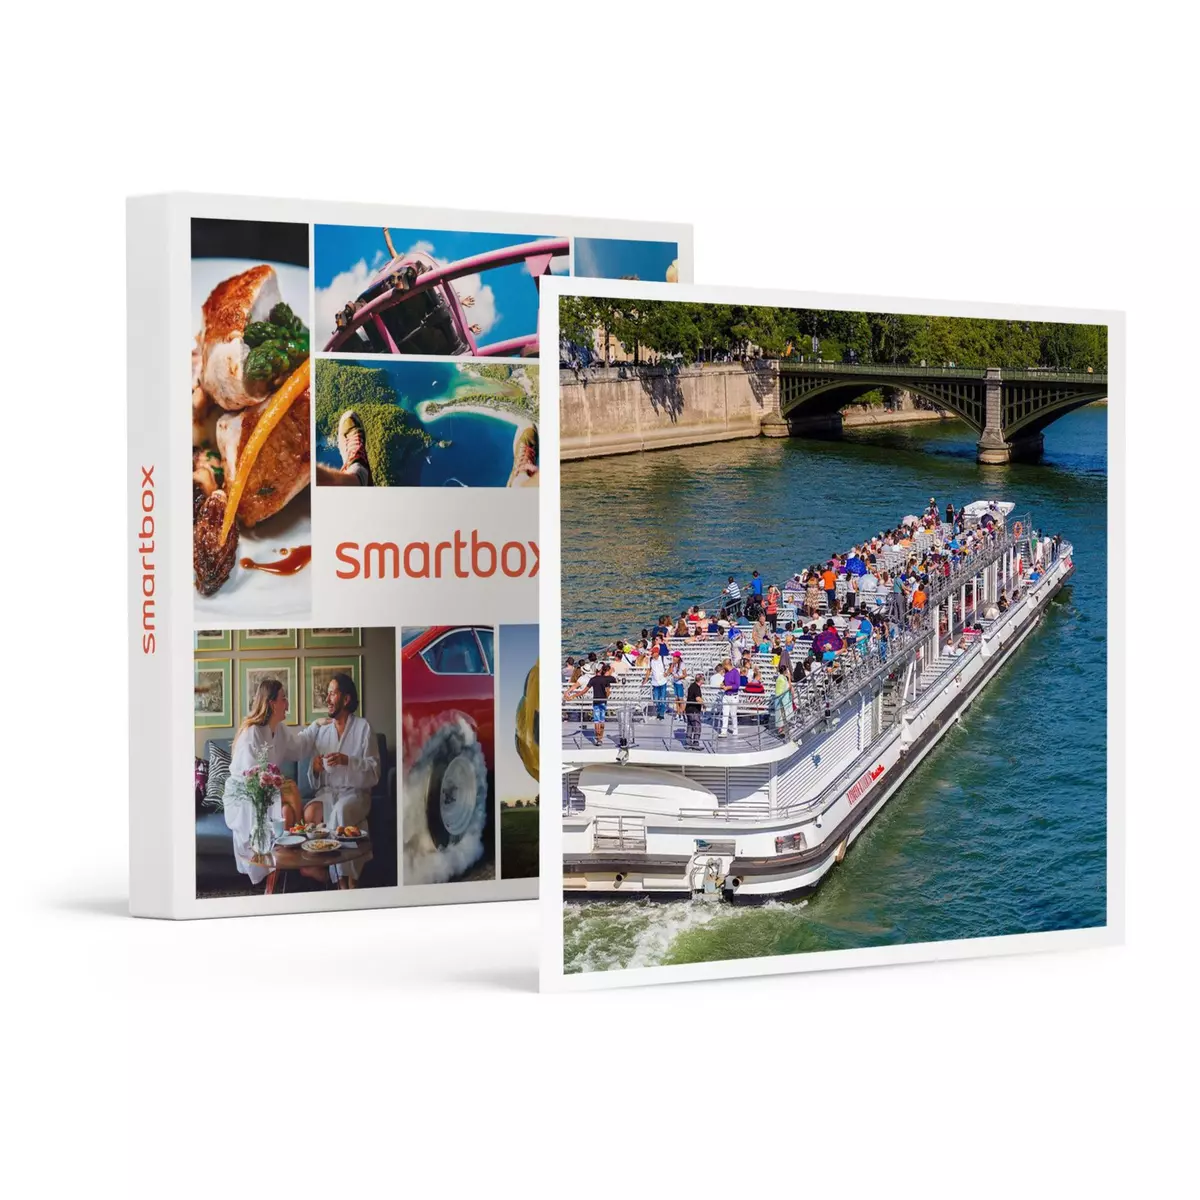 Smartbox Croisière gourmande en bateau-mouche : déjeuner sur la Seine pour 2 adultes et 2 enfants - Coffret Cadeau Gastronomie